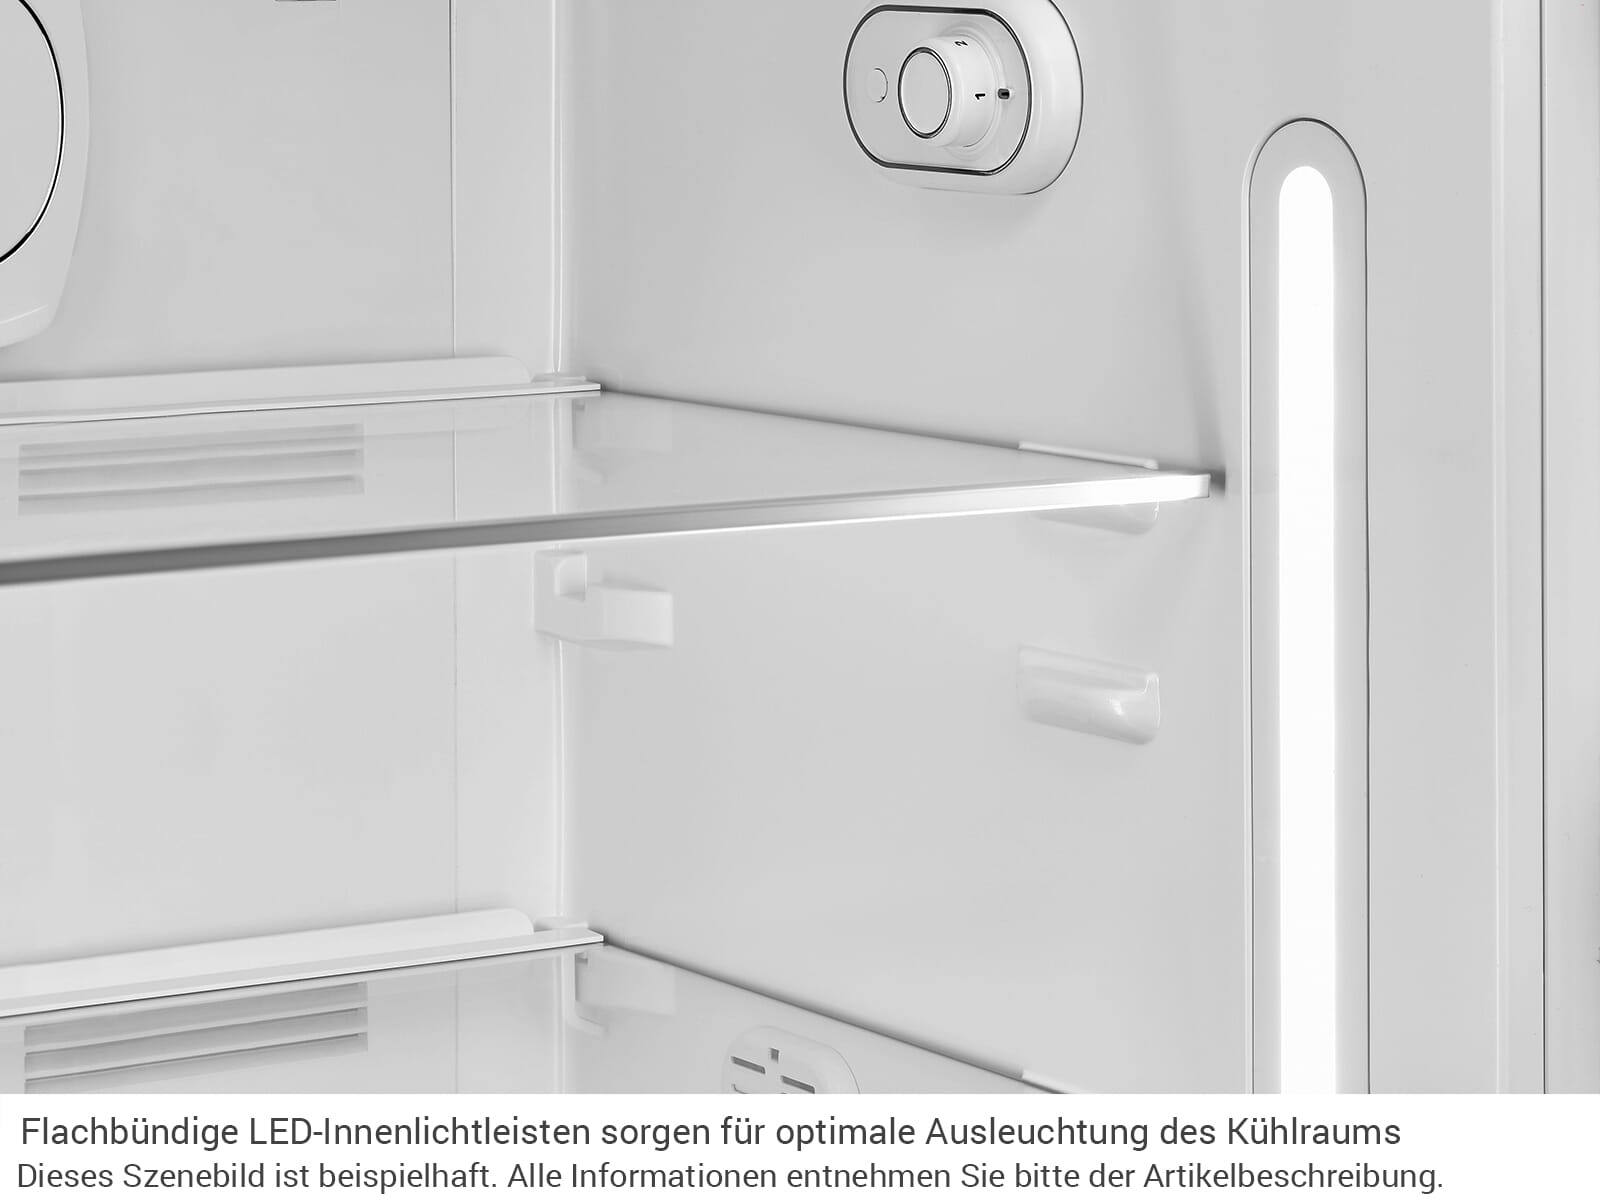 SMEG Kühlschrank mit Gefrierfach 50s Retro Style Pastellgrün FAB28RPG5  hellgrün